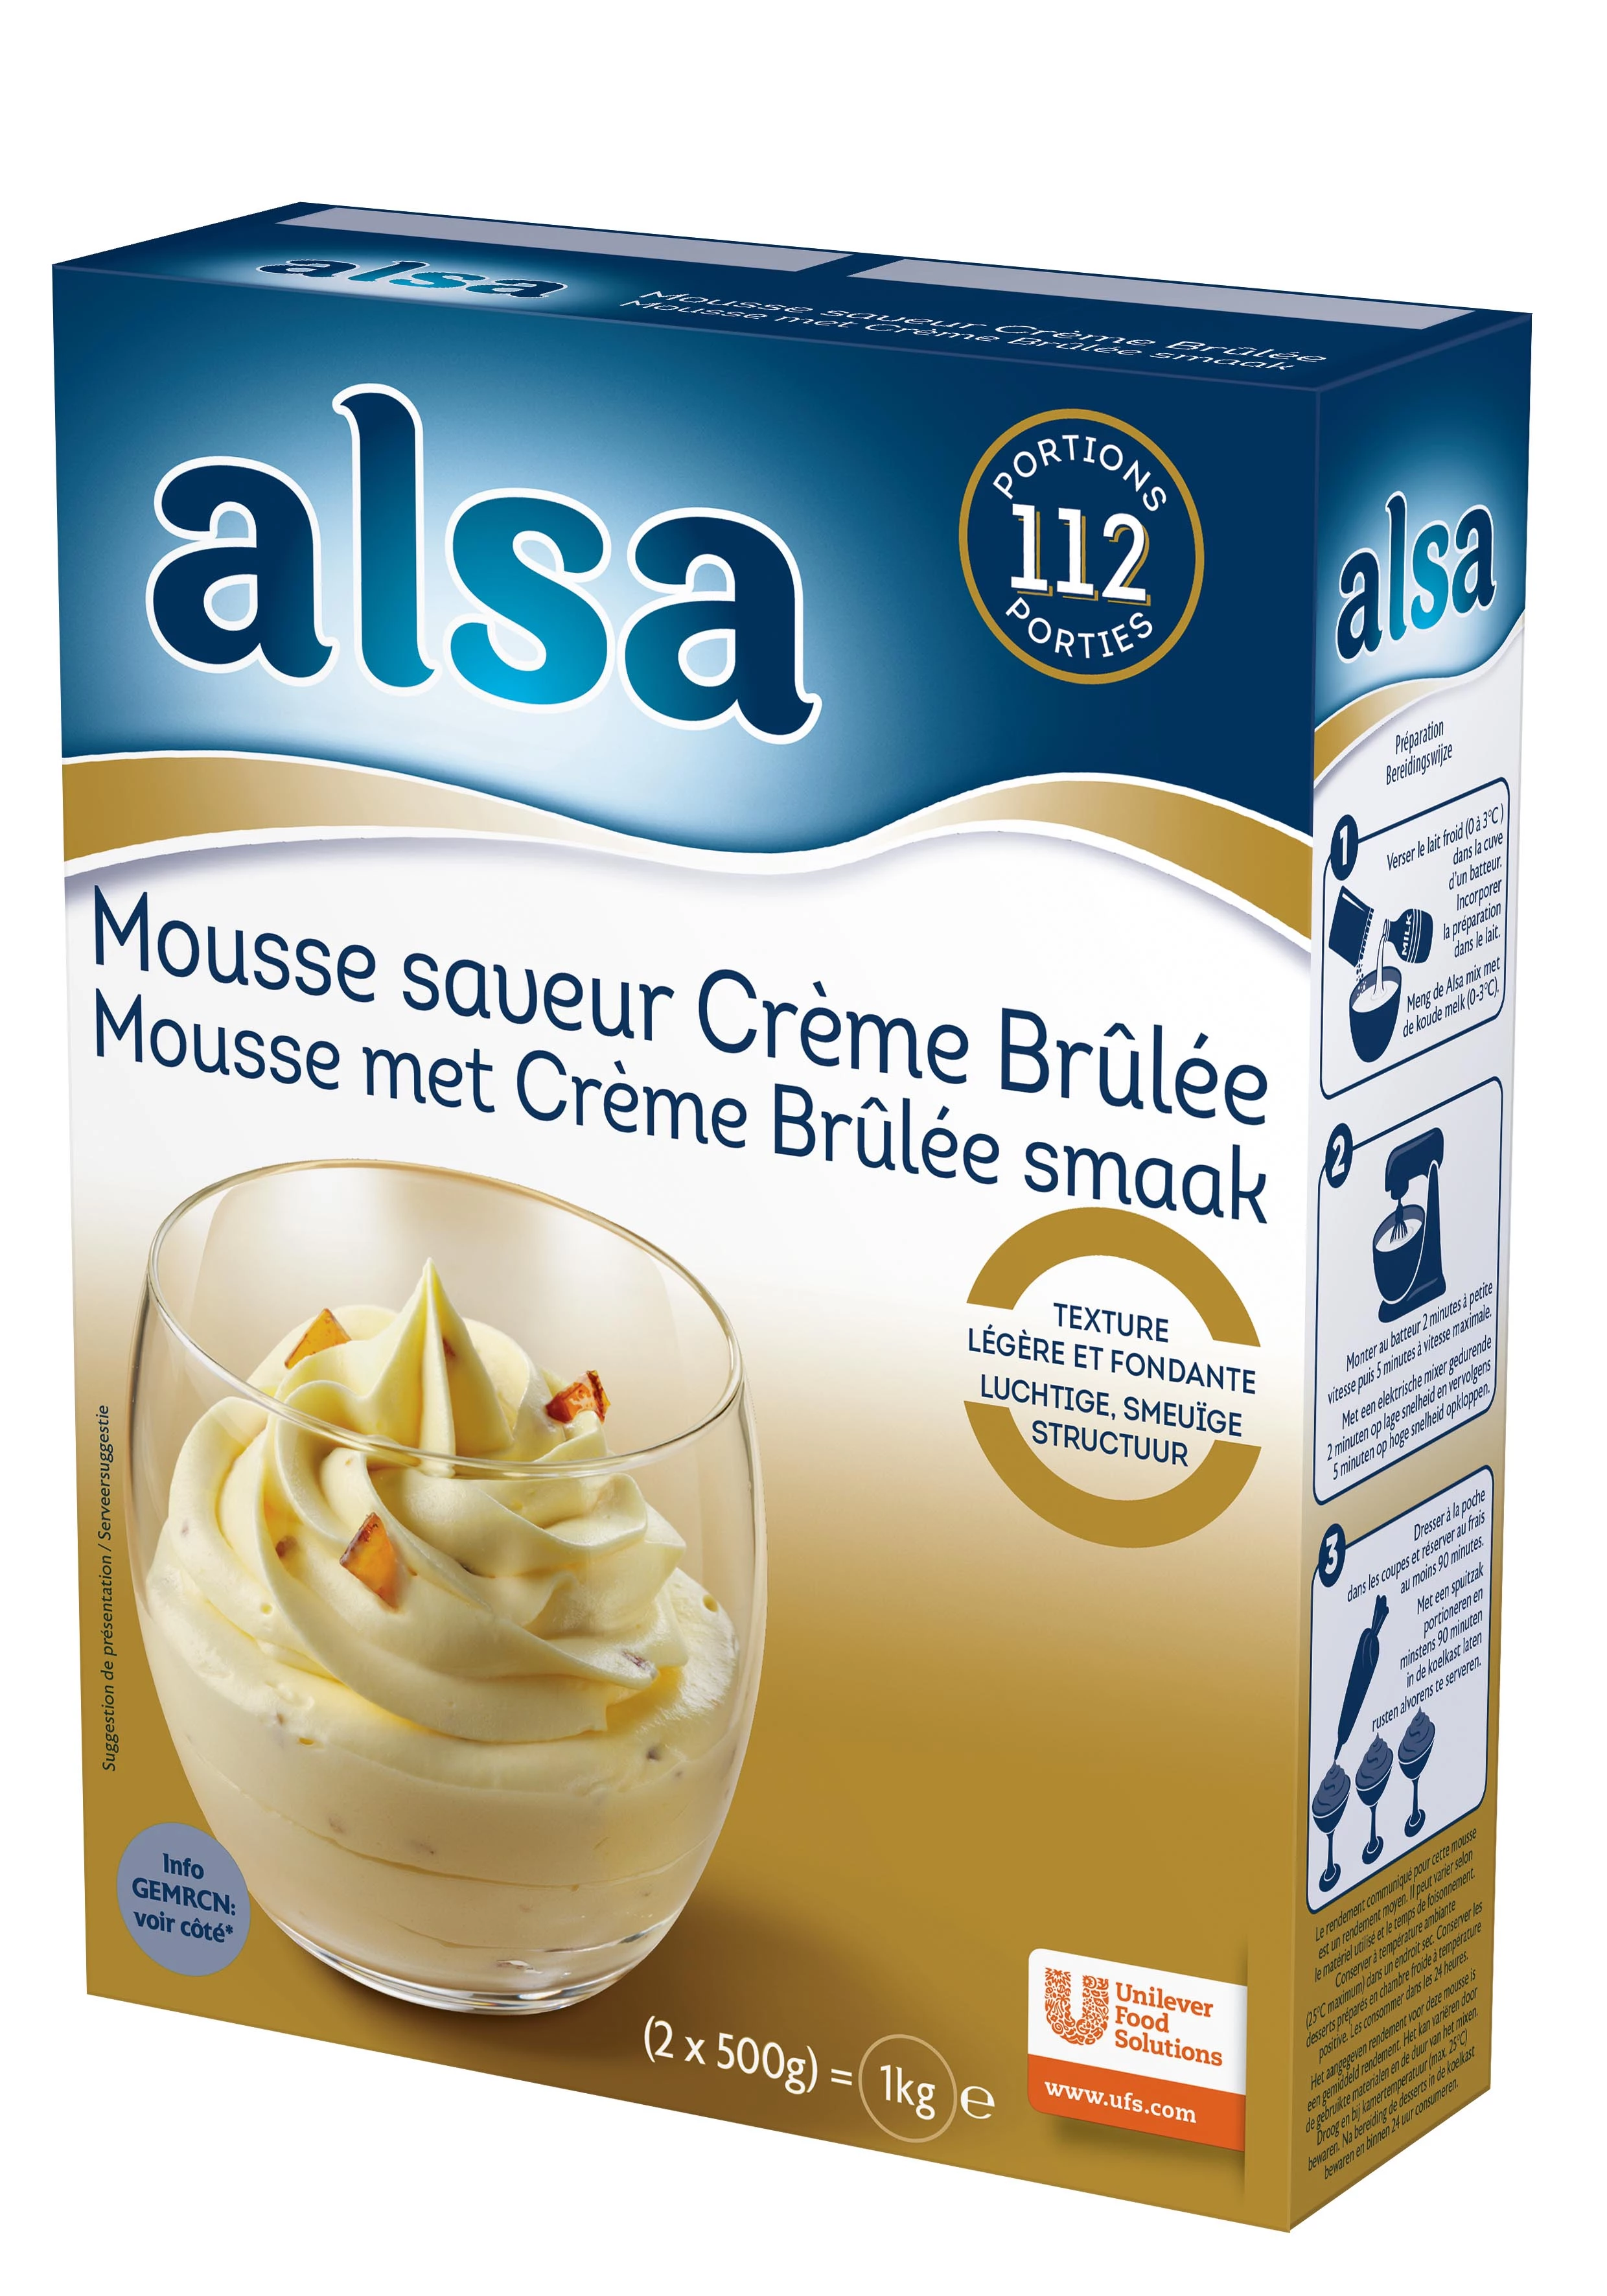 Alsa Mousse Crème Brûlée Flavor 1kg 112 Servings